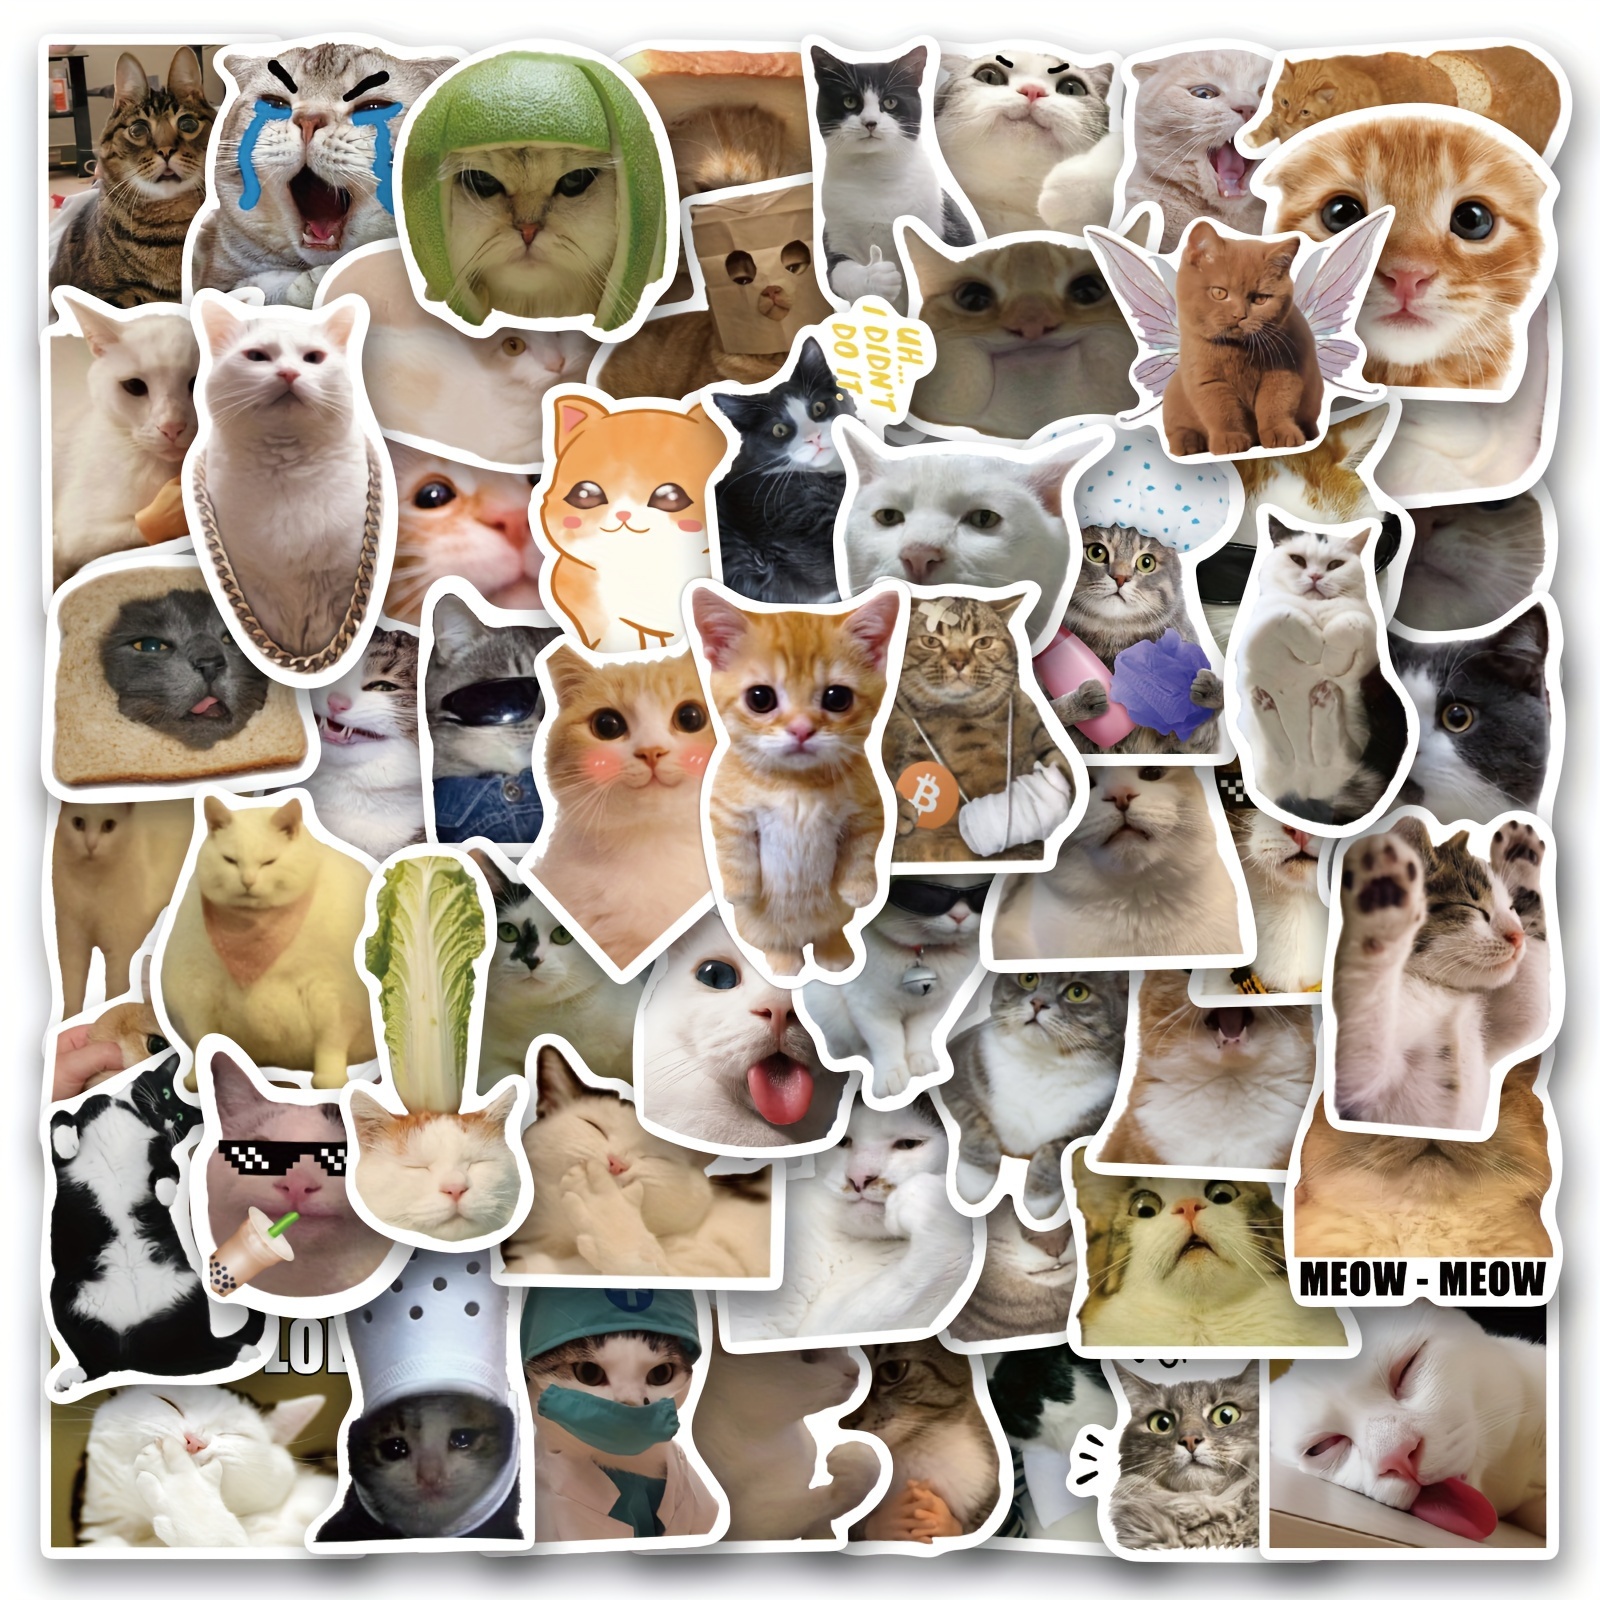 Cat Stickers, 50 Kawaii Kittens Cats Vinyl Decals, Waterproof, Cute Cartoon  Sticker, Craft Supplies -  Denmark